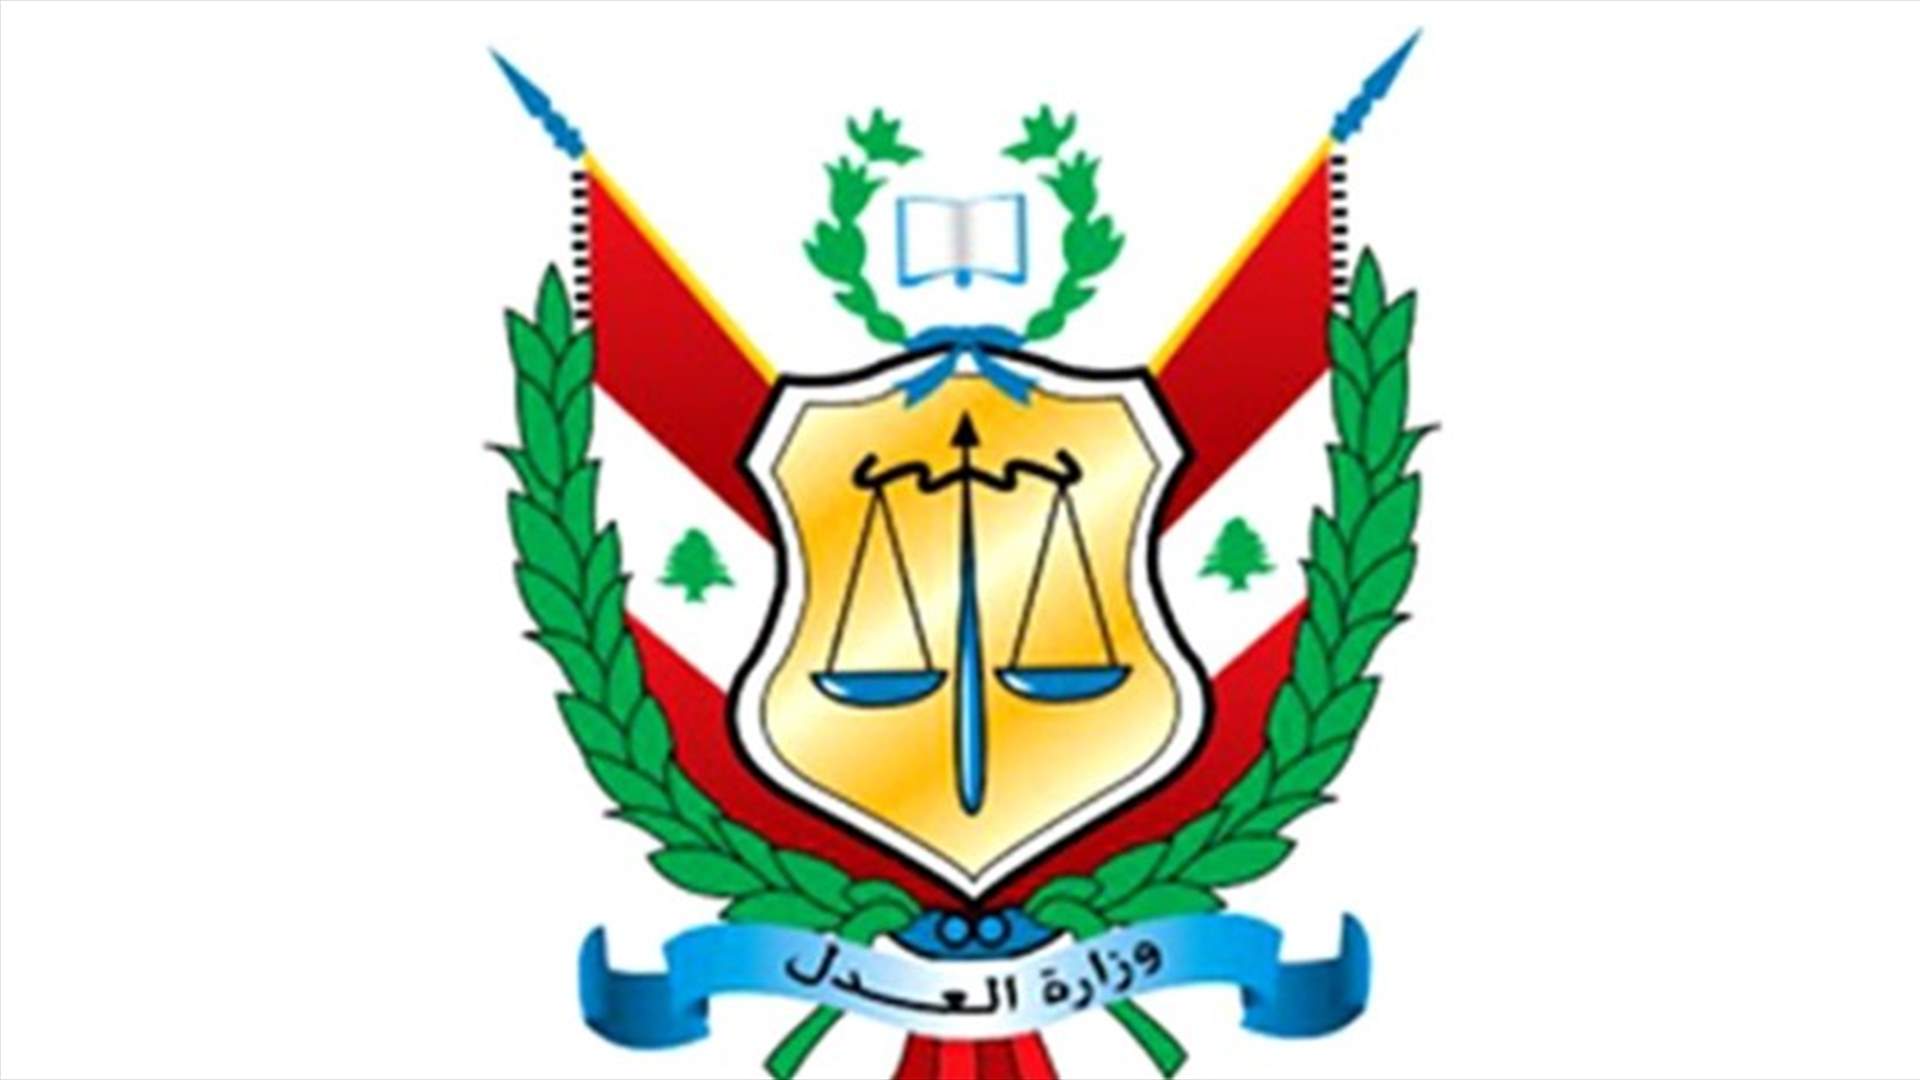 وزارة العدل تنشر بيان قرار المحكمة التحكيمية: زمن الصمت ولى